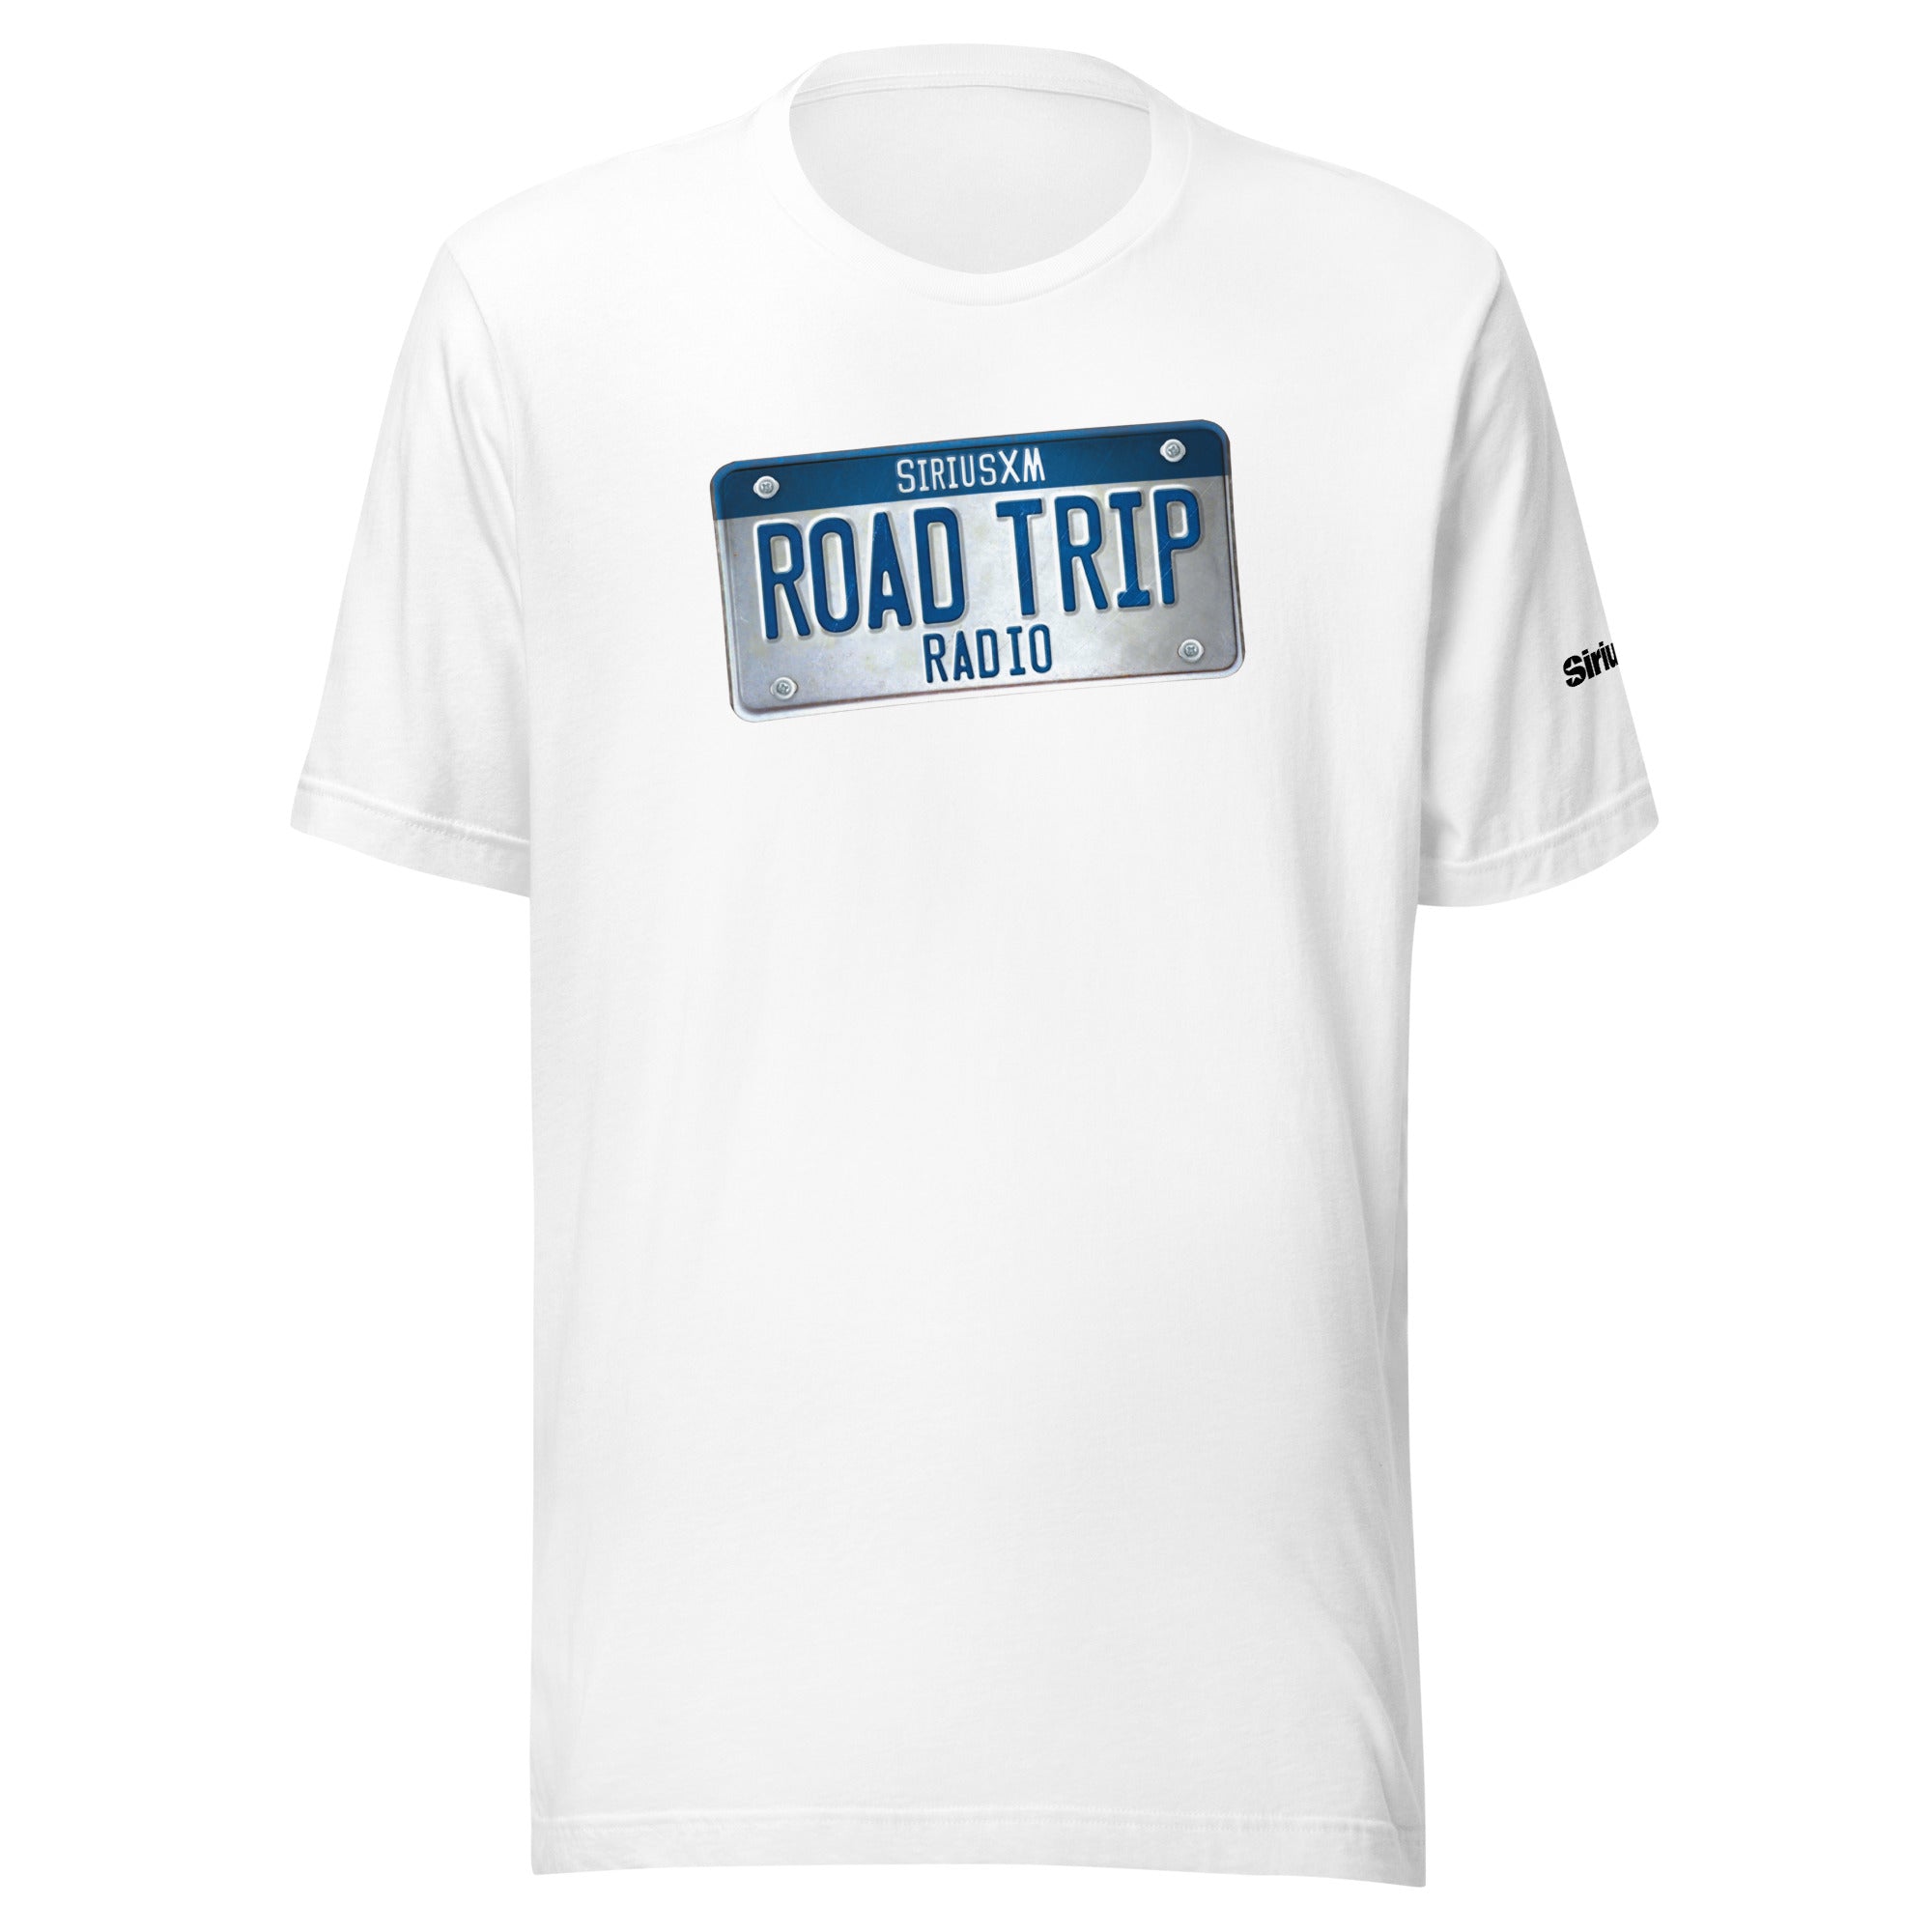 Road Trip Radio: T-shirt (White)